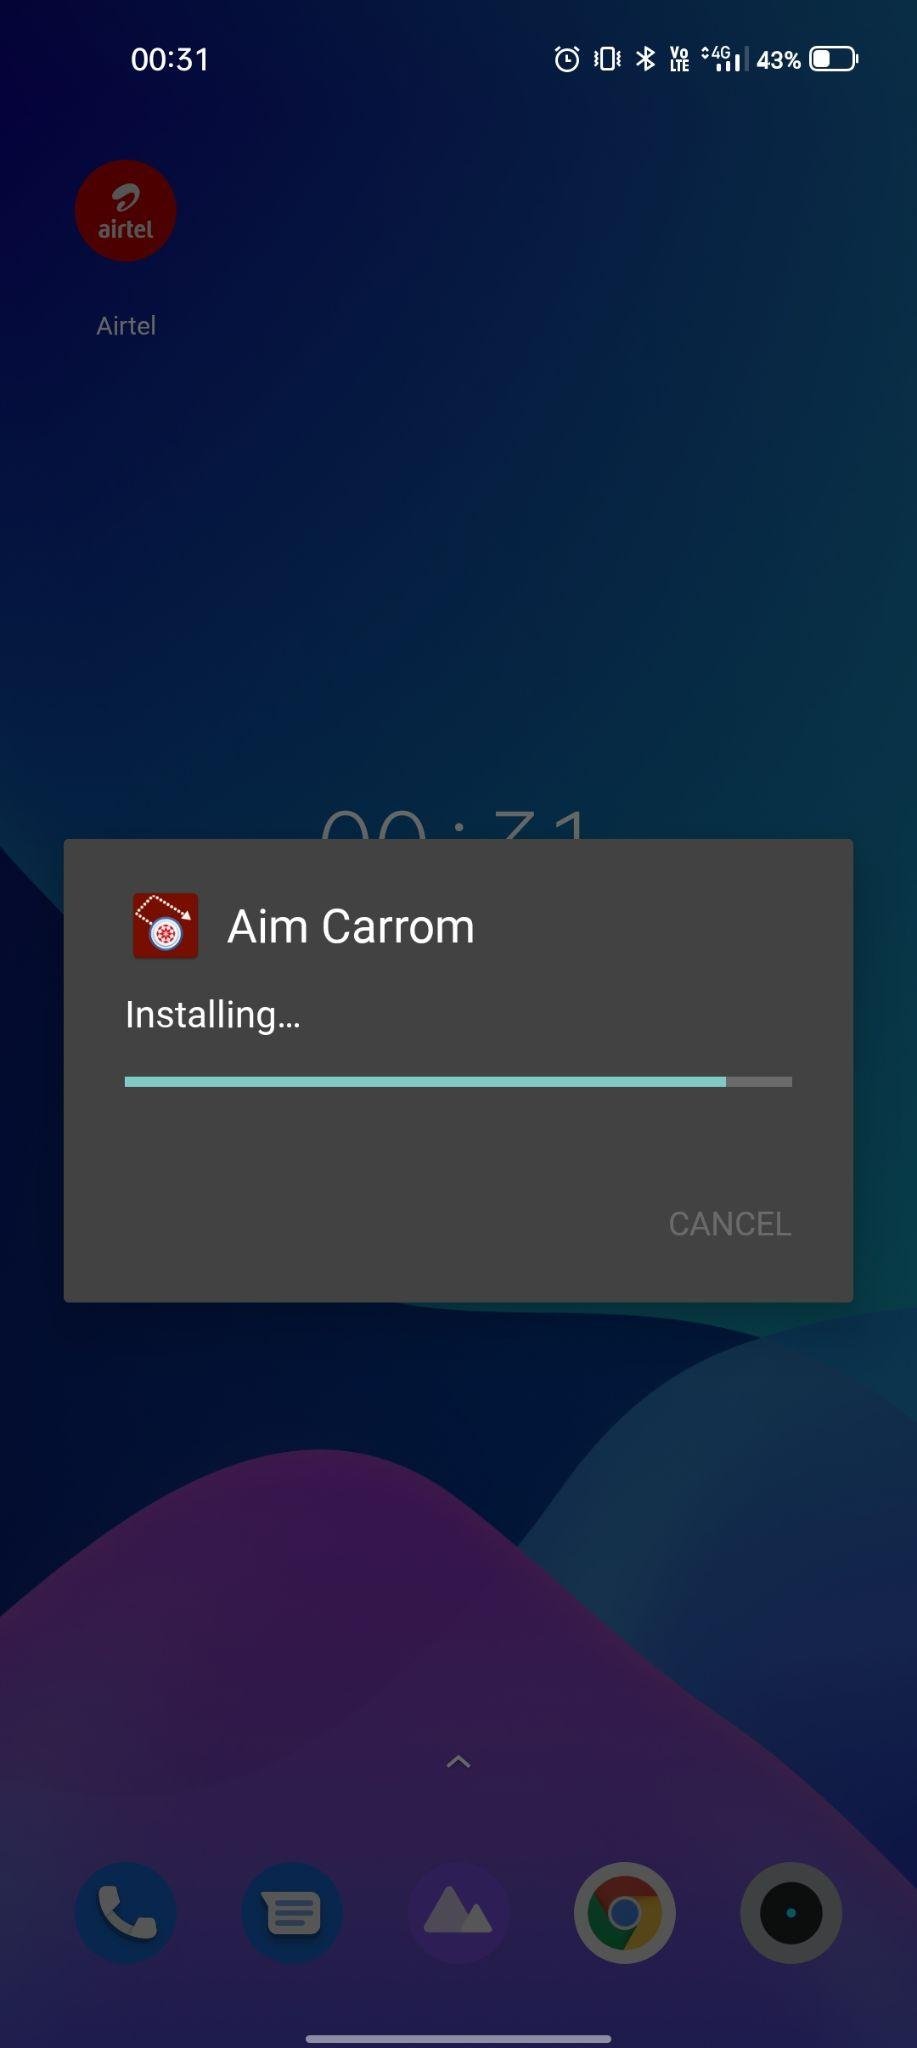 aim carrom apk installing